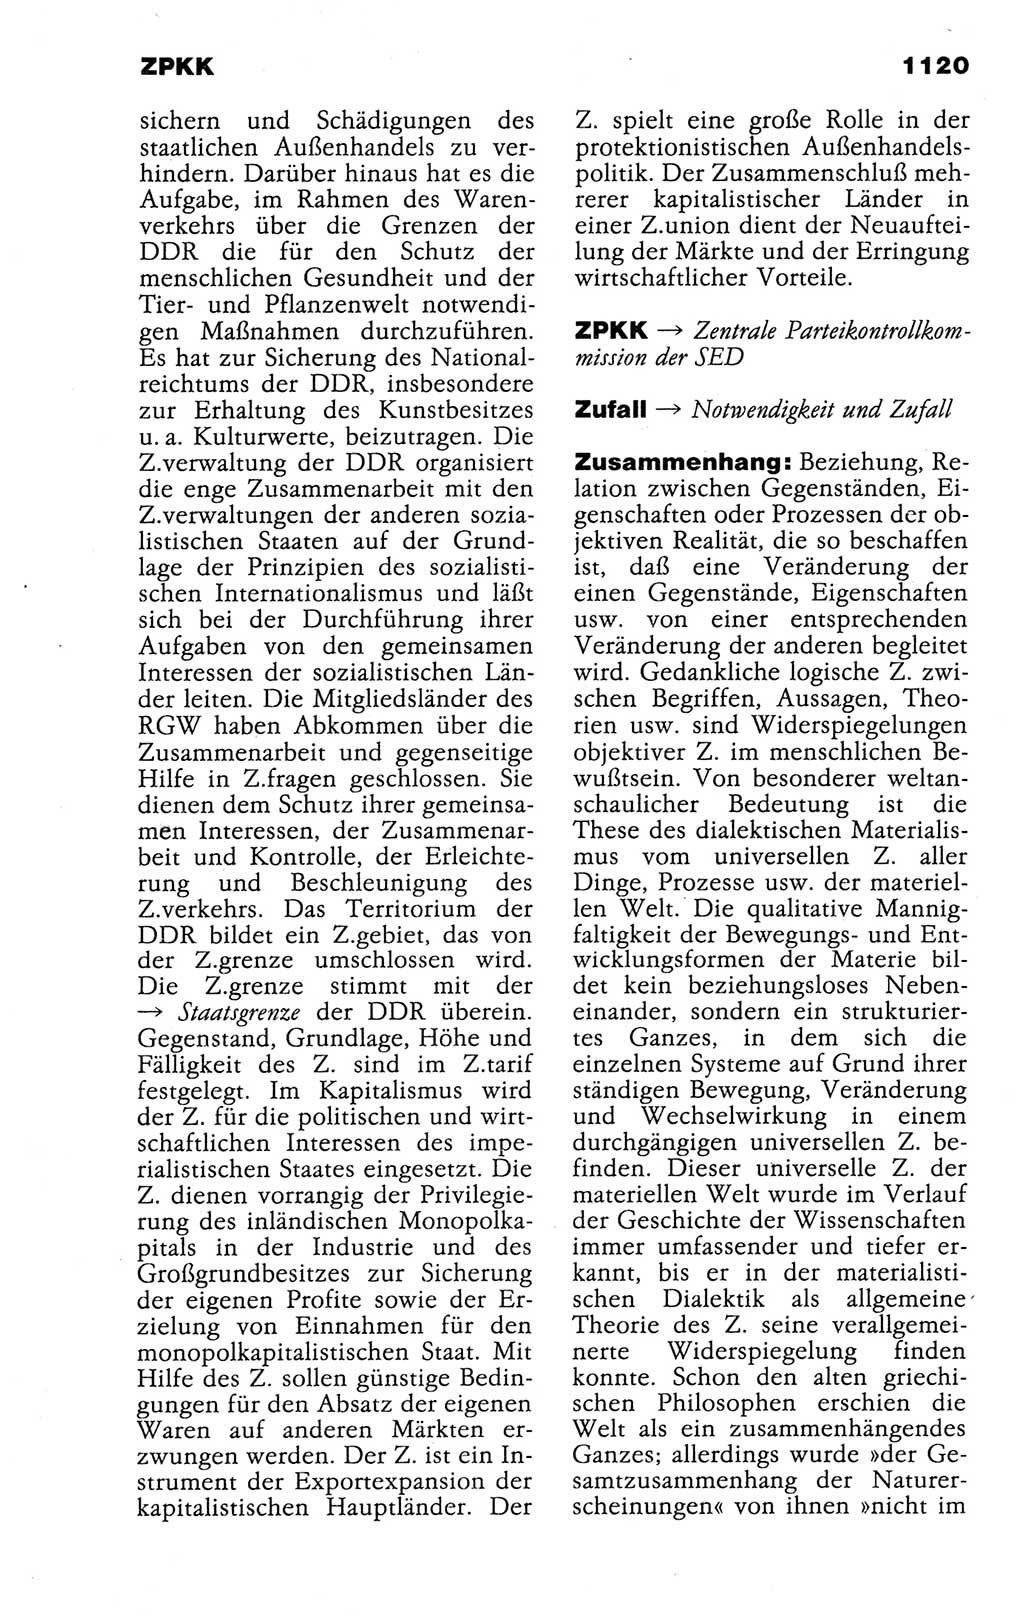 Kleines politisches Wörterbuch [Deutsche Demokratische Republik (DDR)] 1988, Seite 1120 (Kl. pol. Wb. DDR 1988, S. 1120)